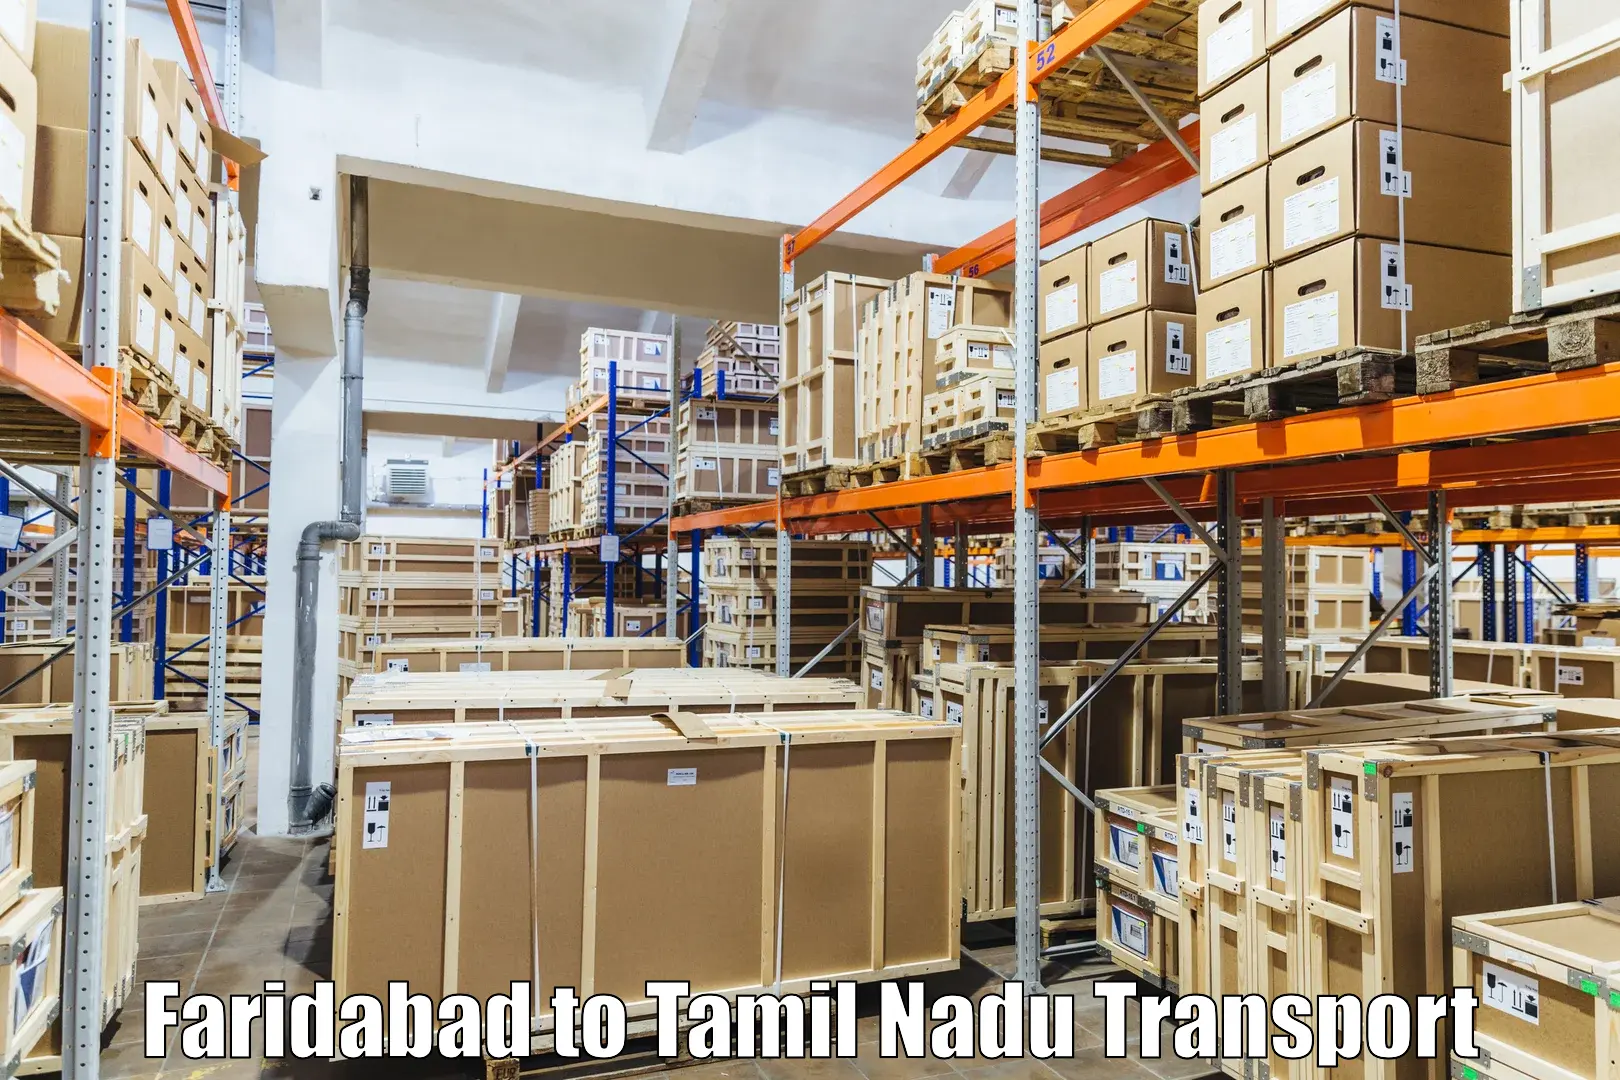 Nearest transport service Faridabad to IIIT Tiruchirappalli